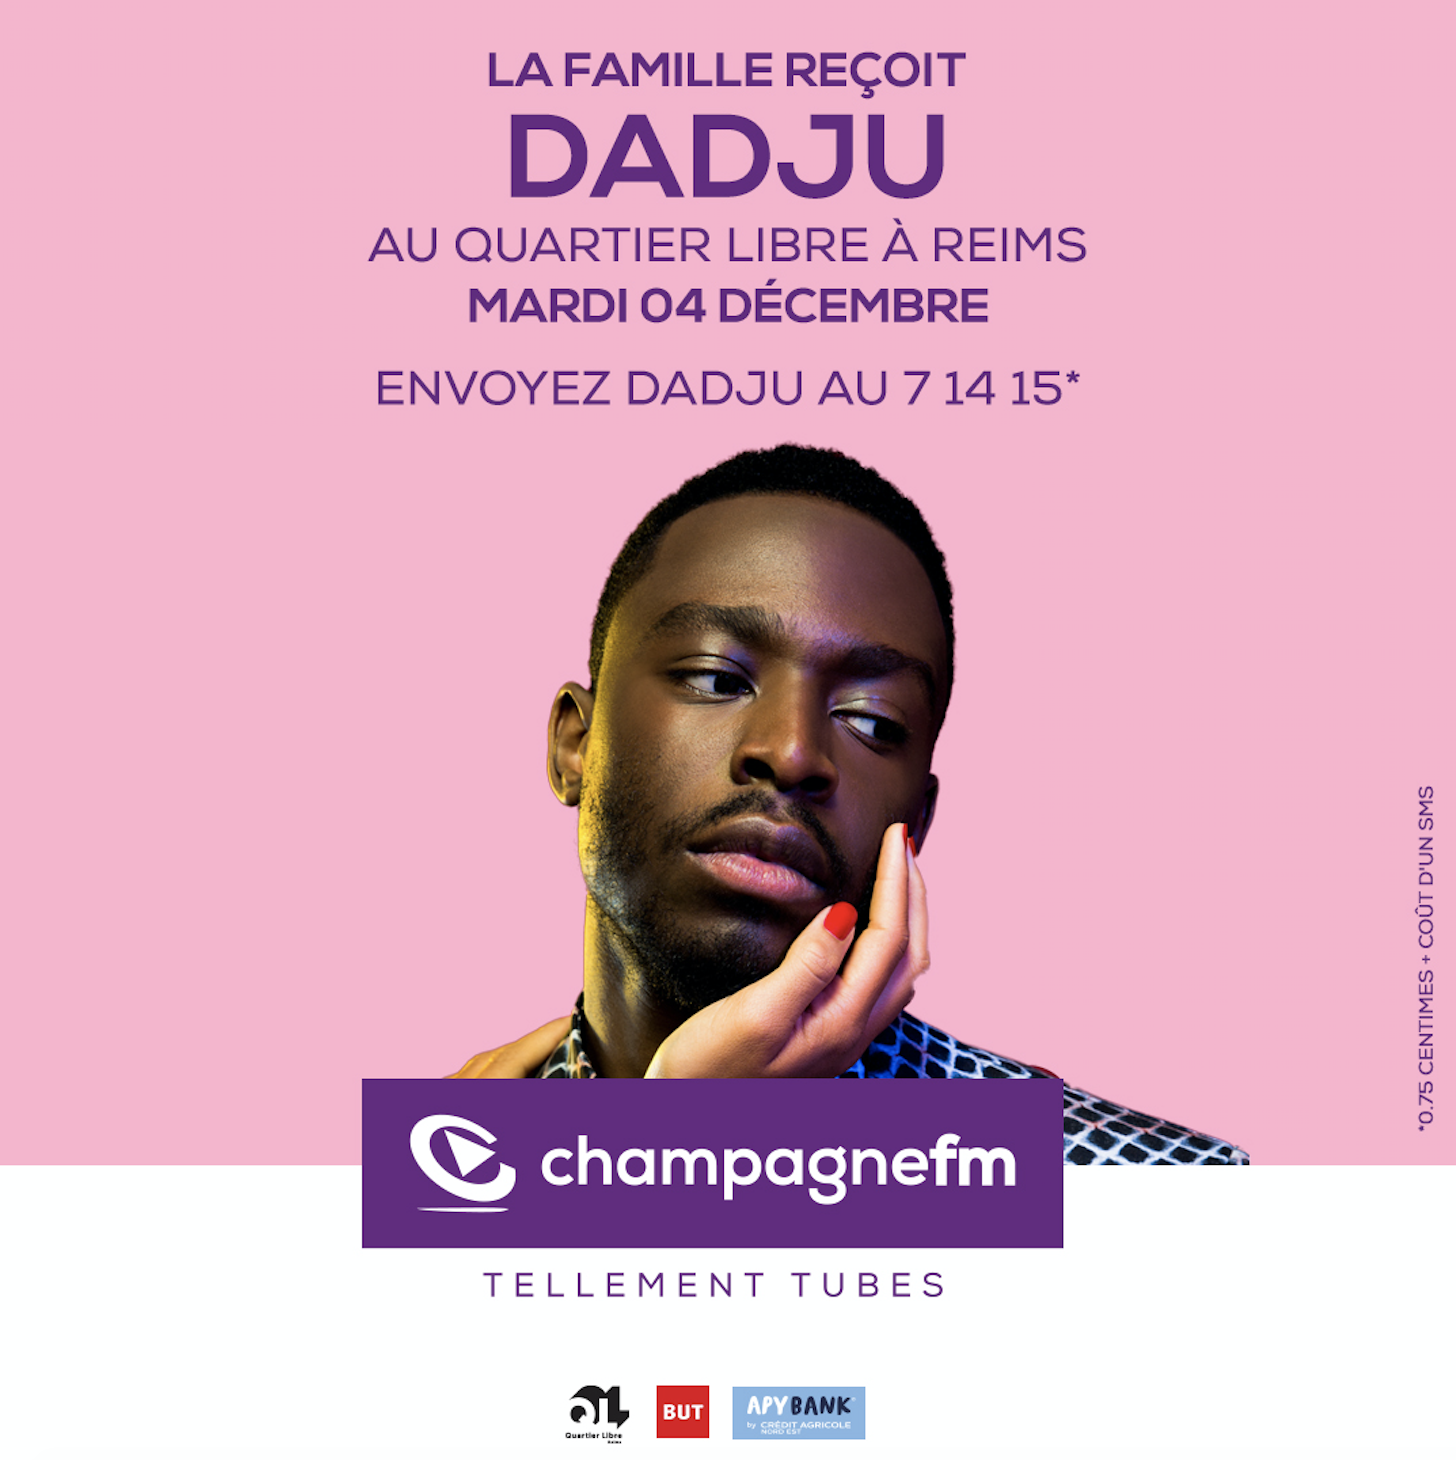 Le chanteur Dadju invité de Champagne FM